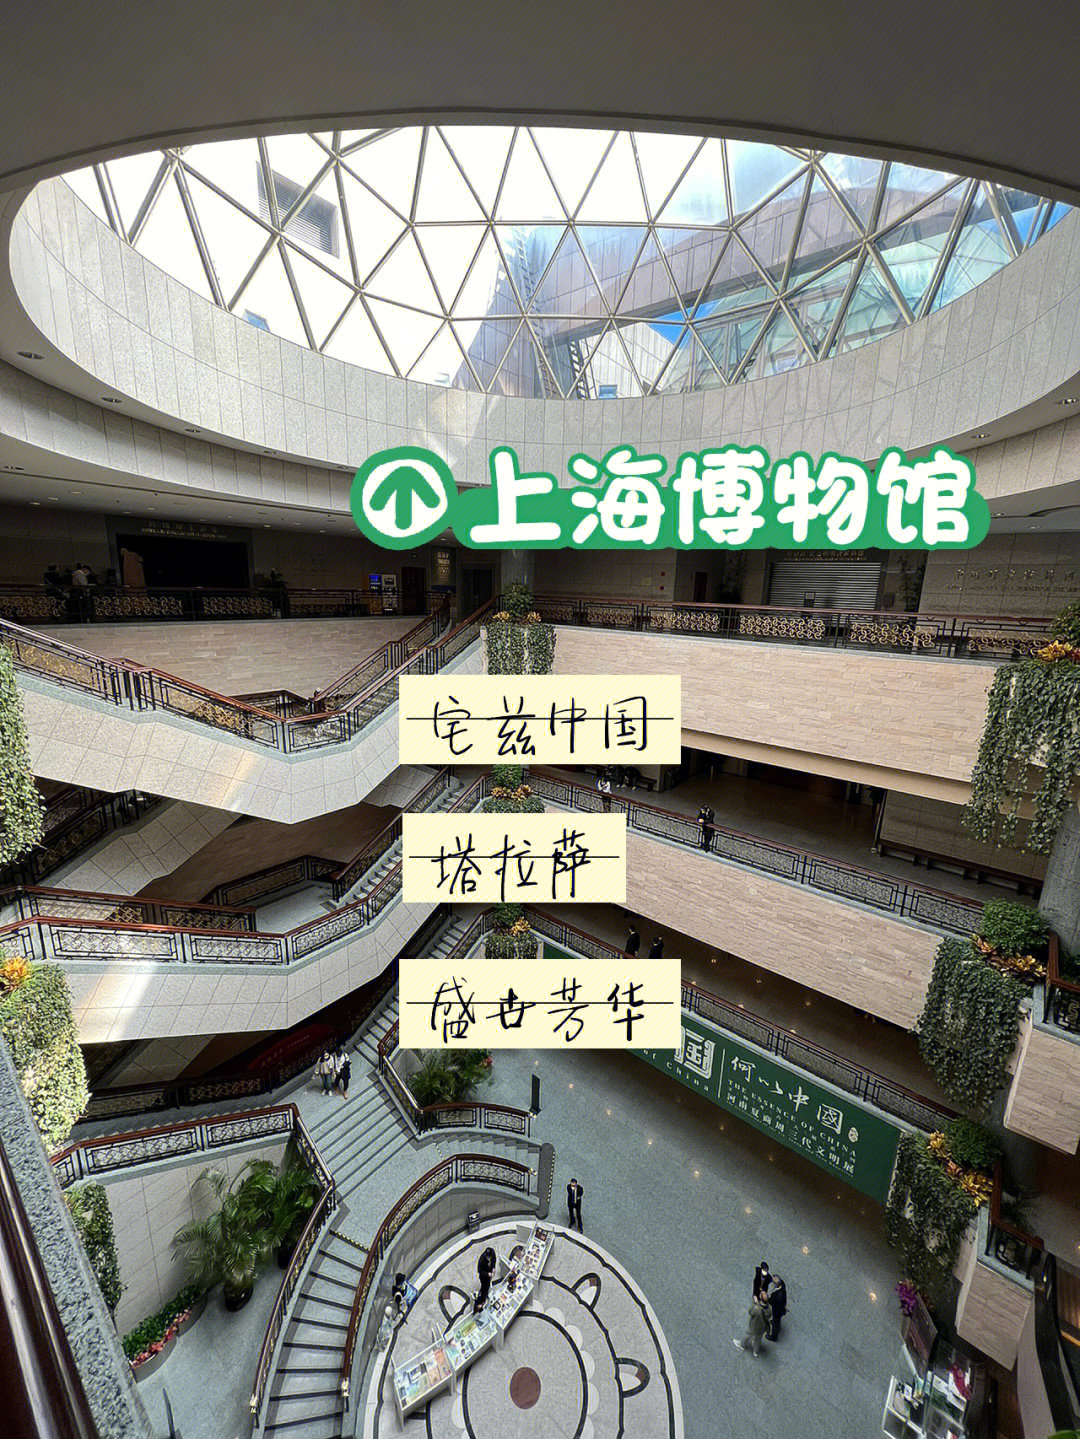 地铁1/2/8号线到人民广场站门票:免费(需提前在上海博物馆wx号上预约)